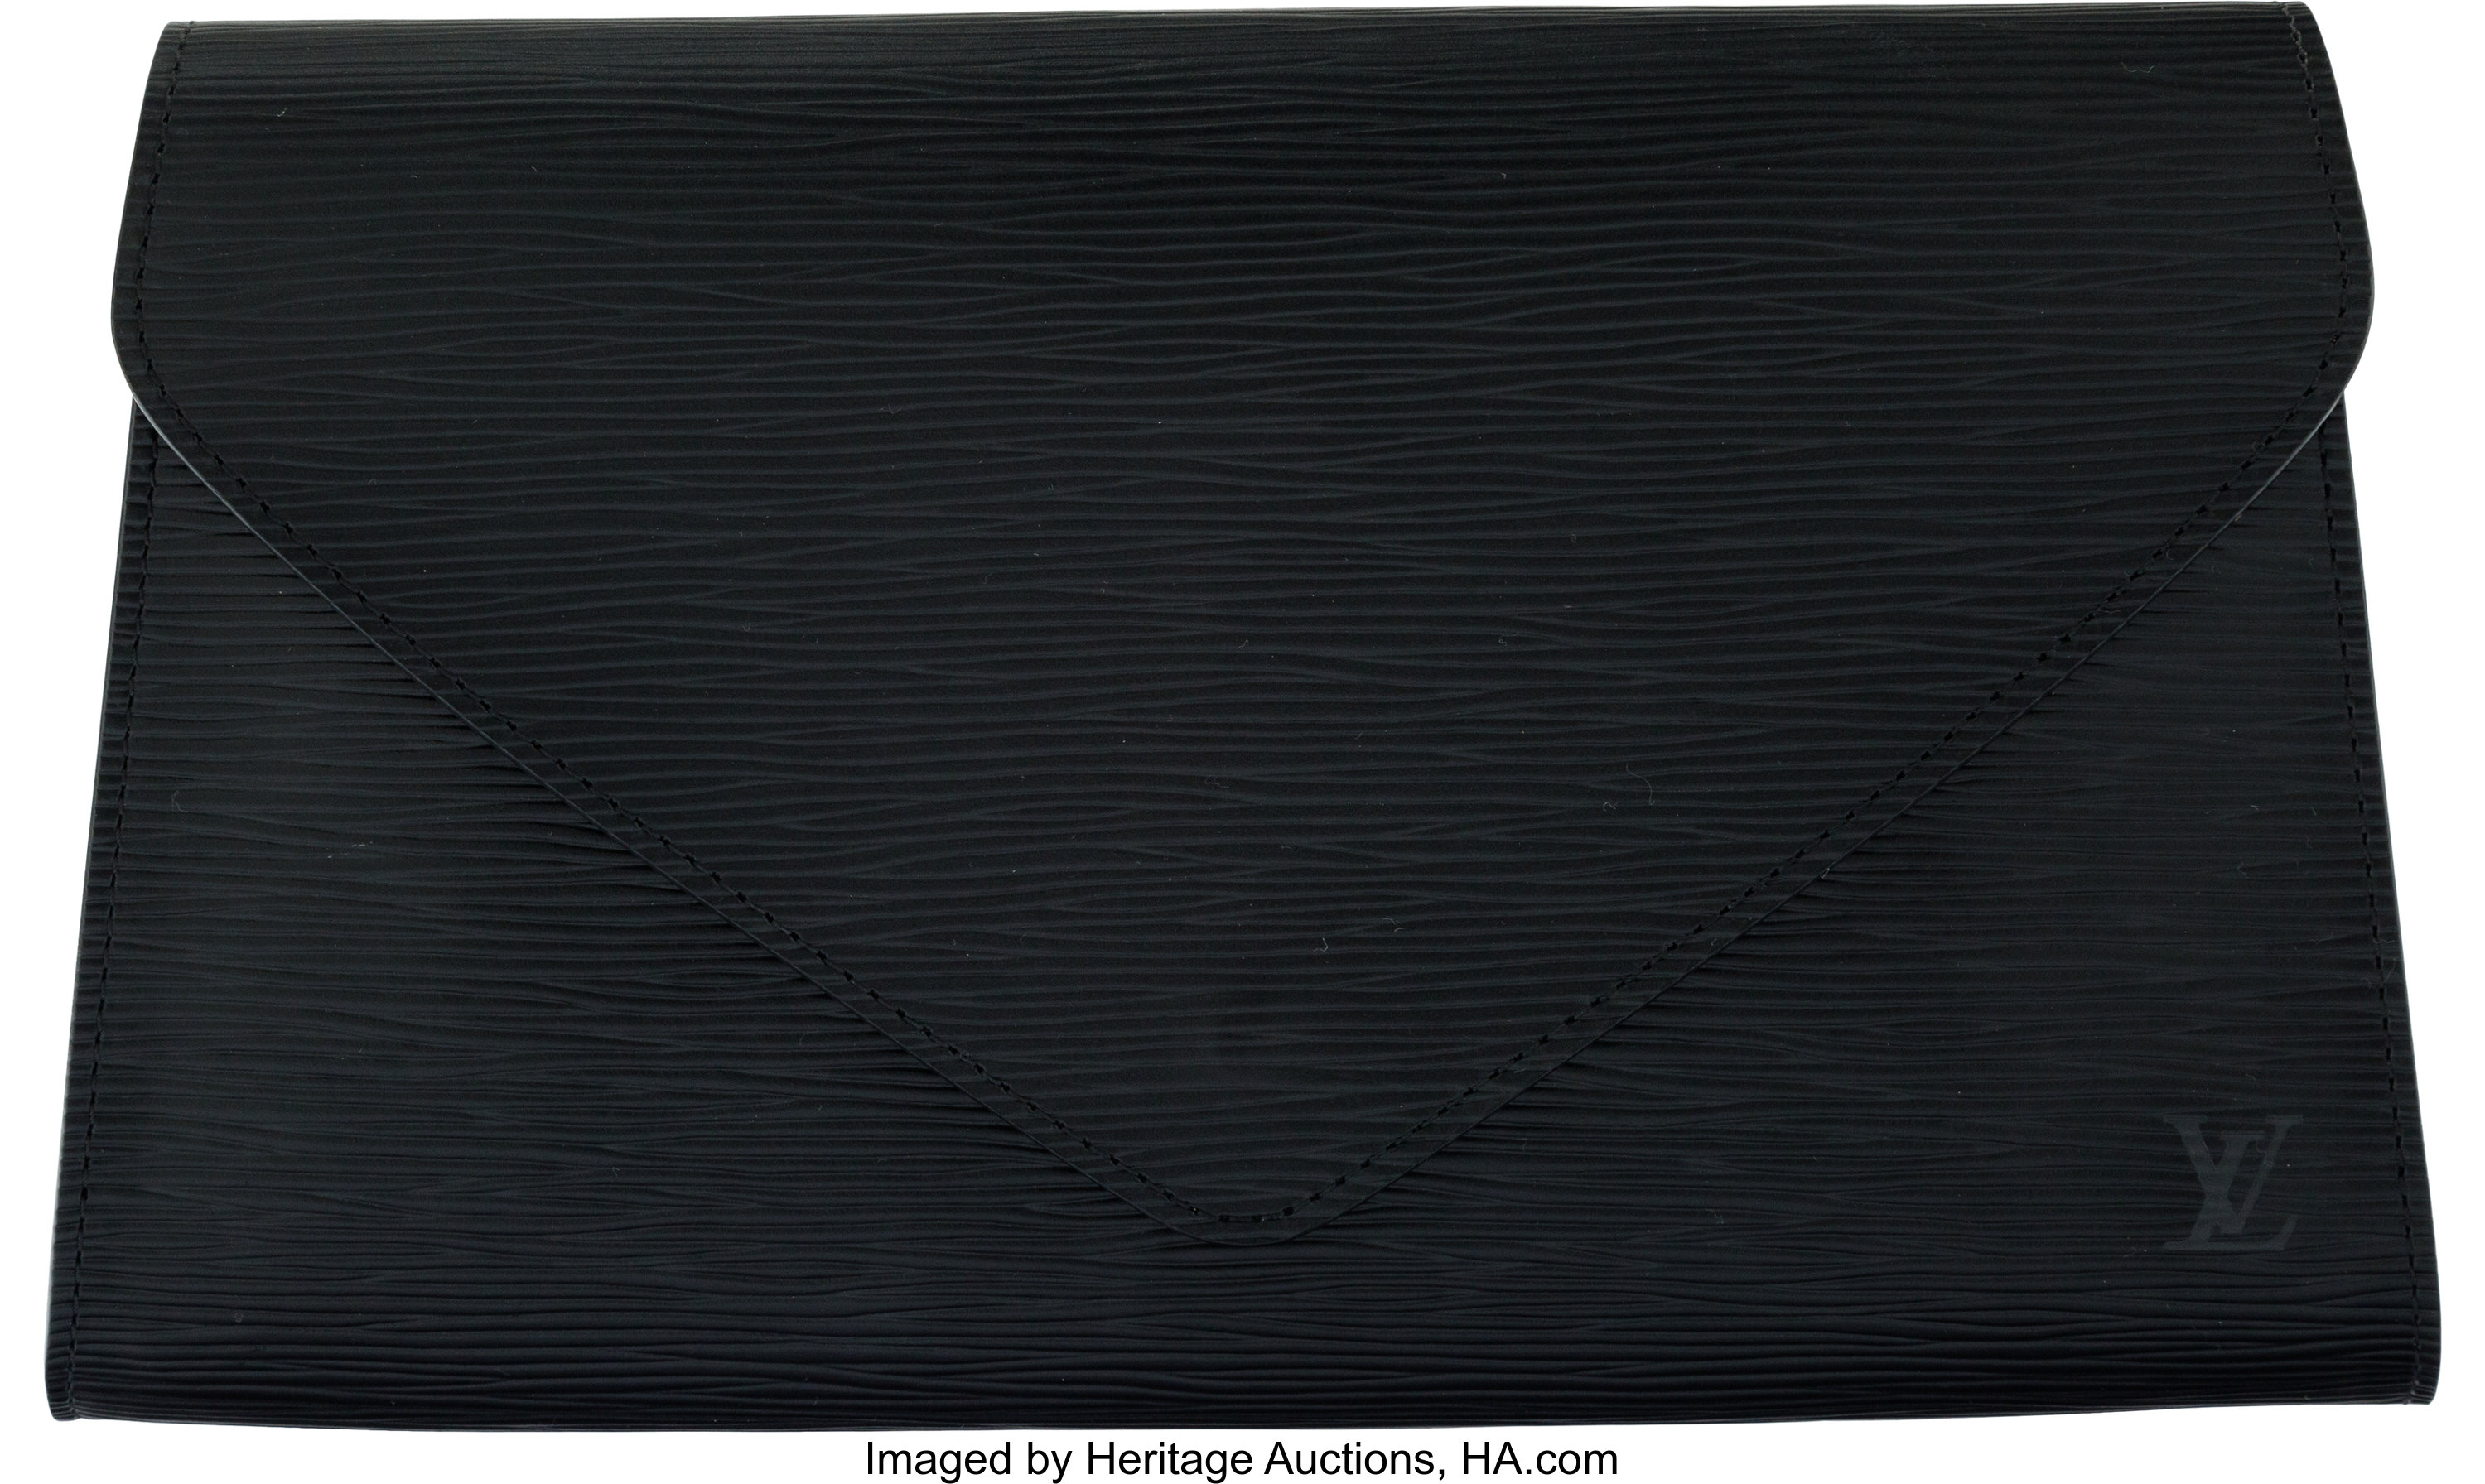 Louis Vuitton Black Epi Leather Art Deco Envelope Clutch.